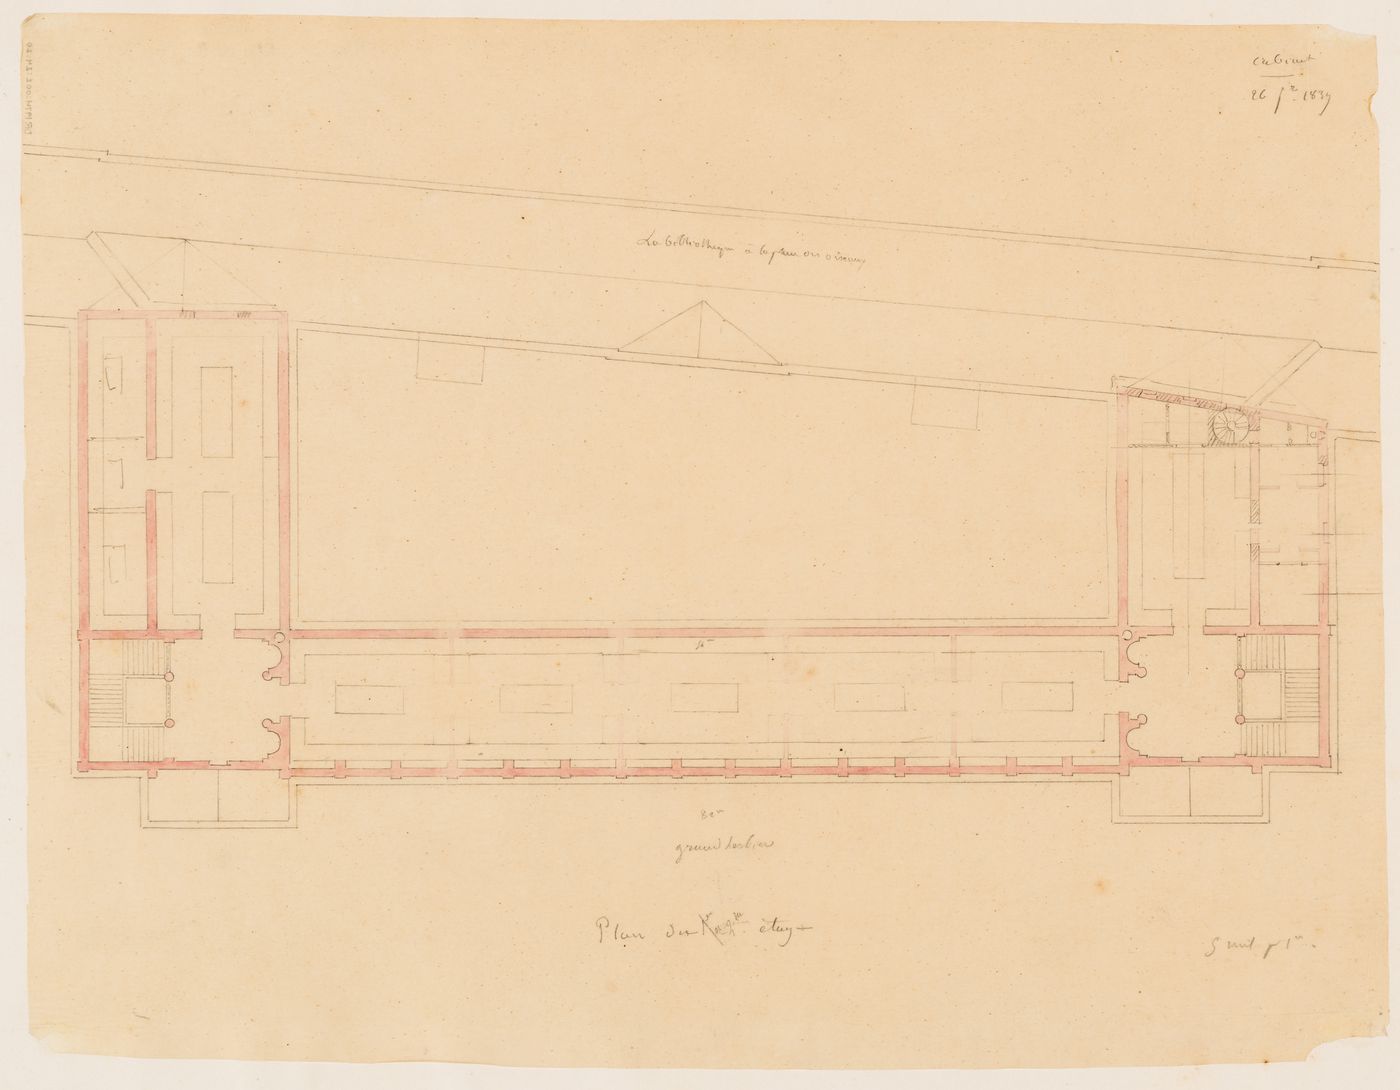 Project for a Galerie de botanique et de paléontologie, 1839: Second floor plan